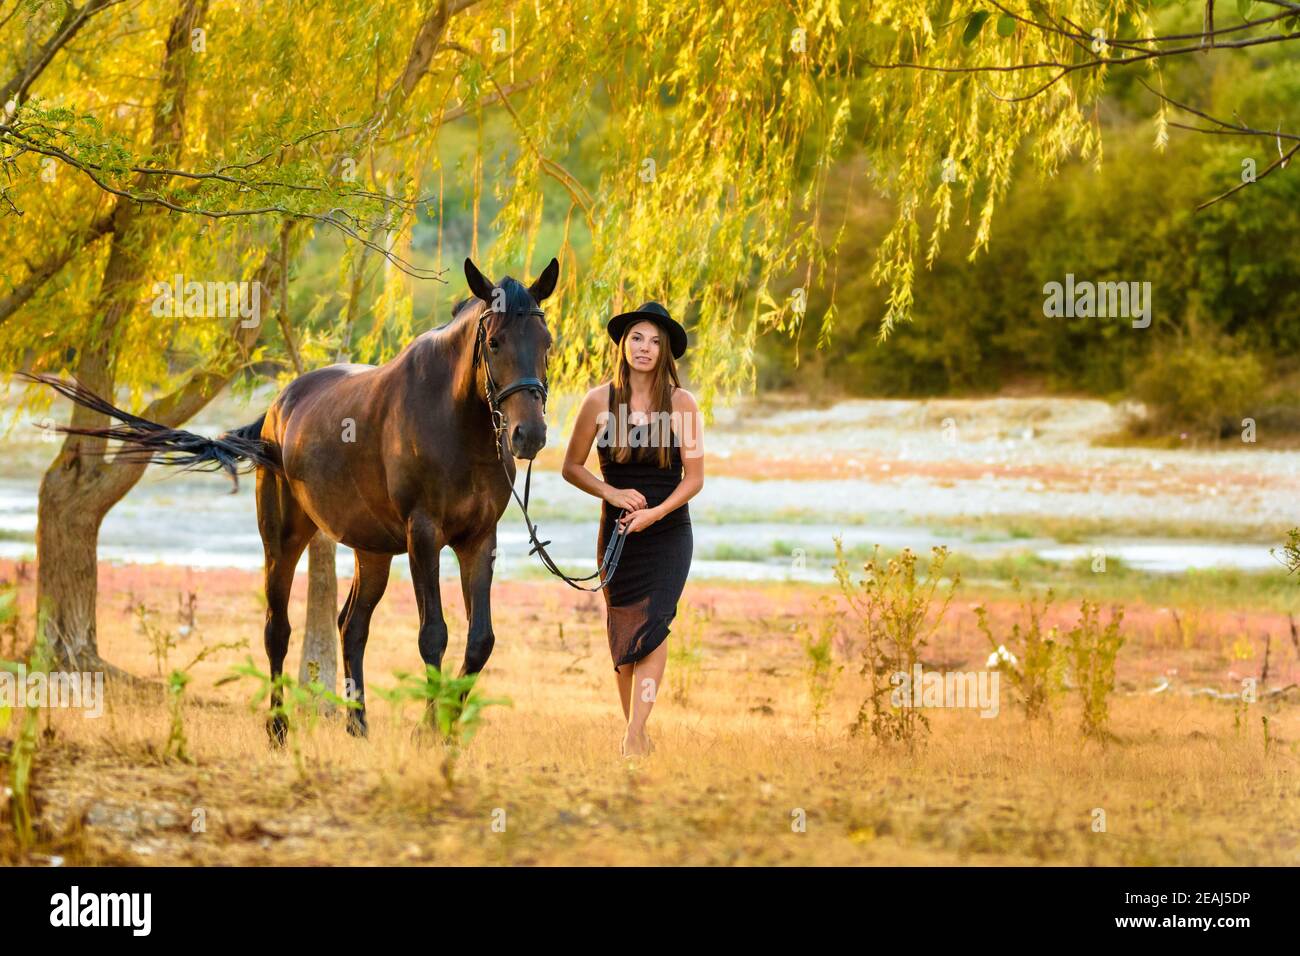 Ein Mädchen in einem schönen schwarzen Kleid und einem schwarzen hut läuft mit einem Pferd über das Feld Stockfoto